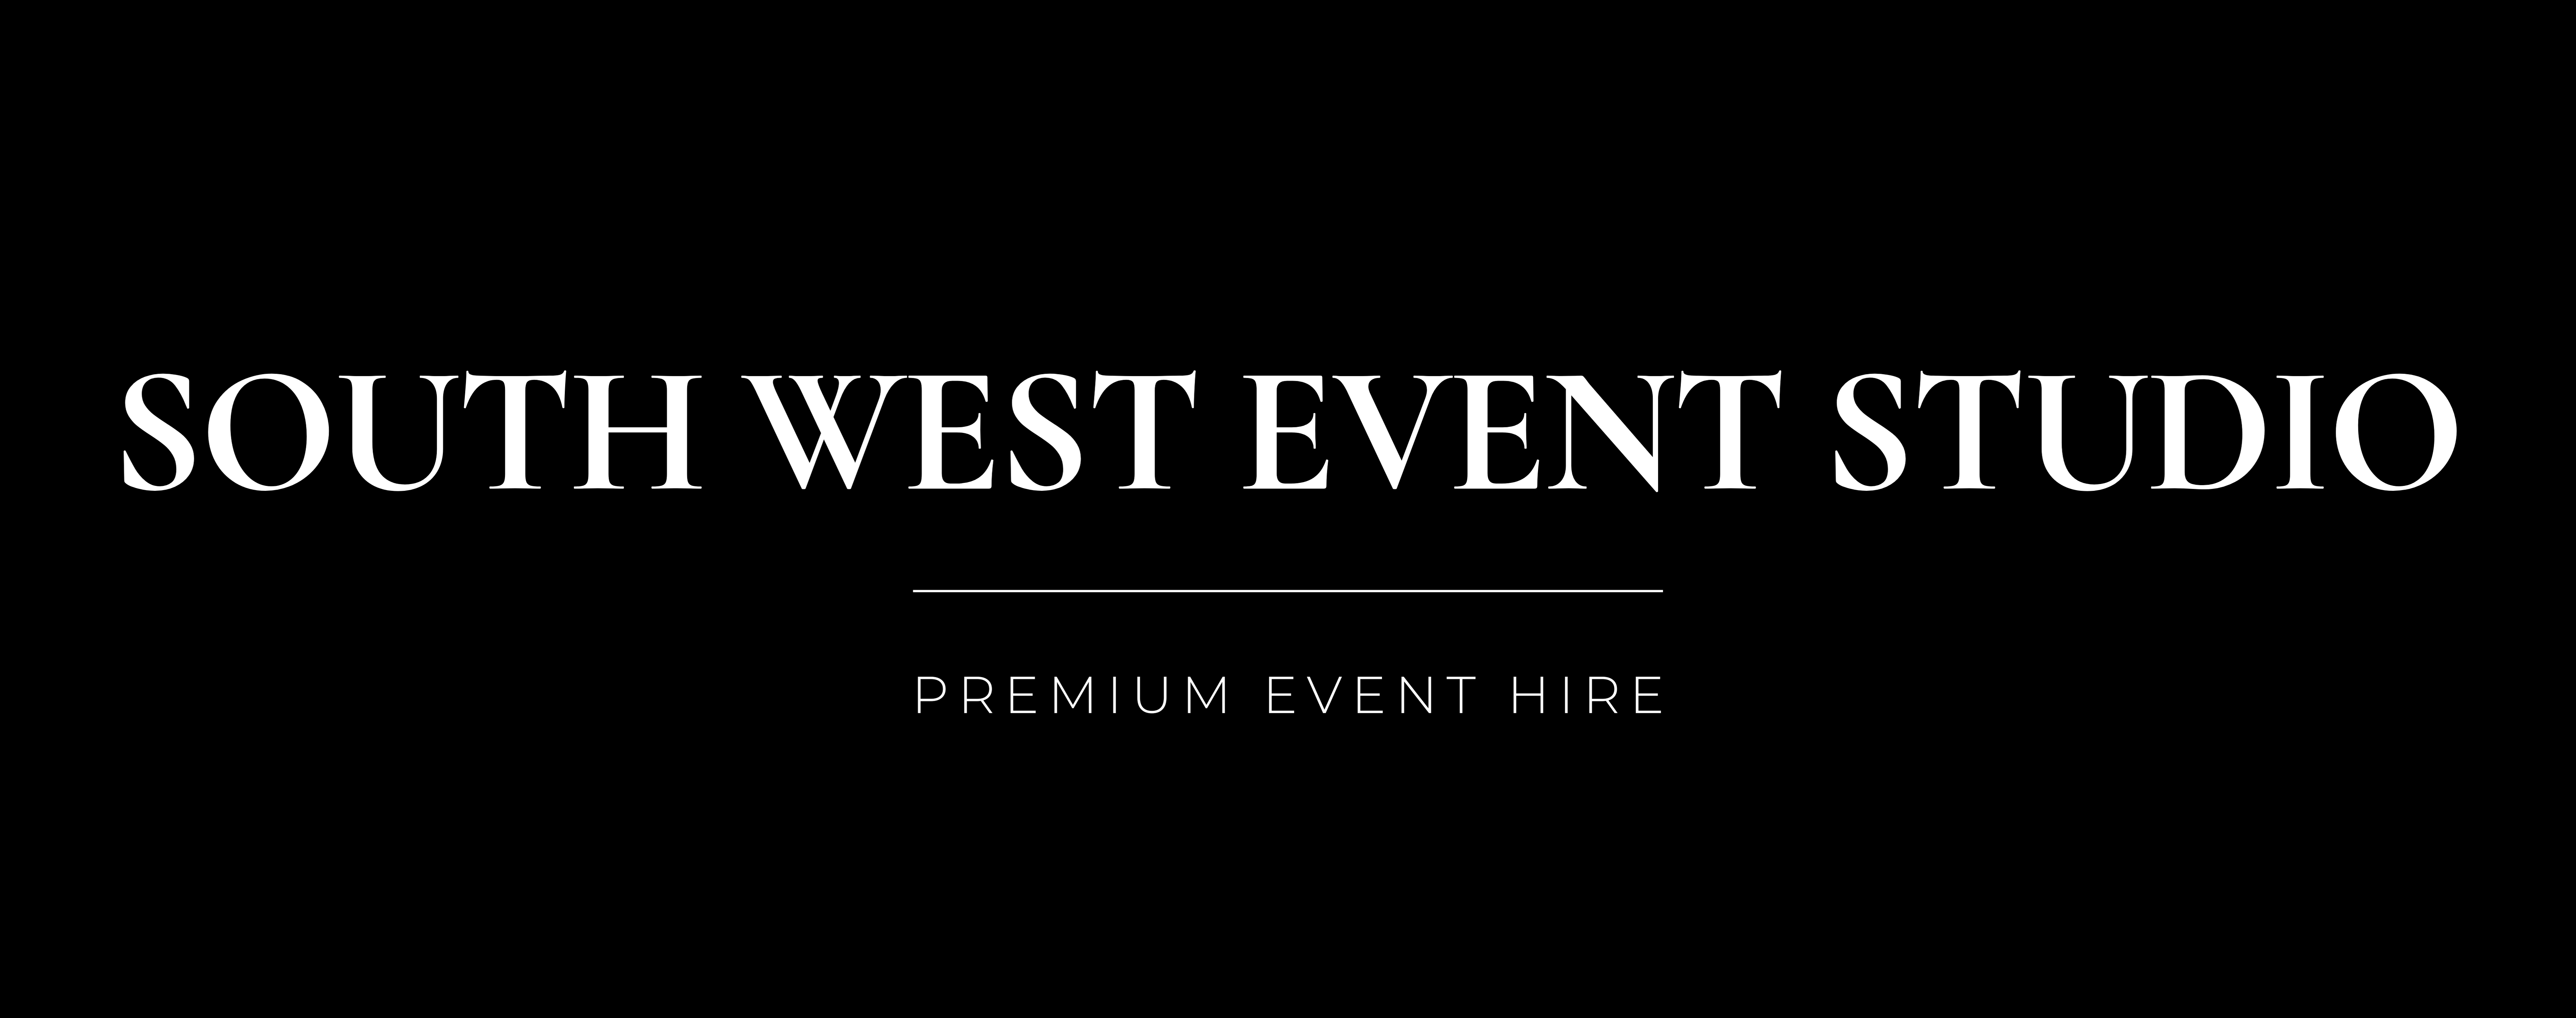 South West Event Studio logo